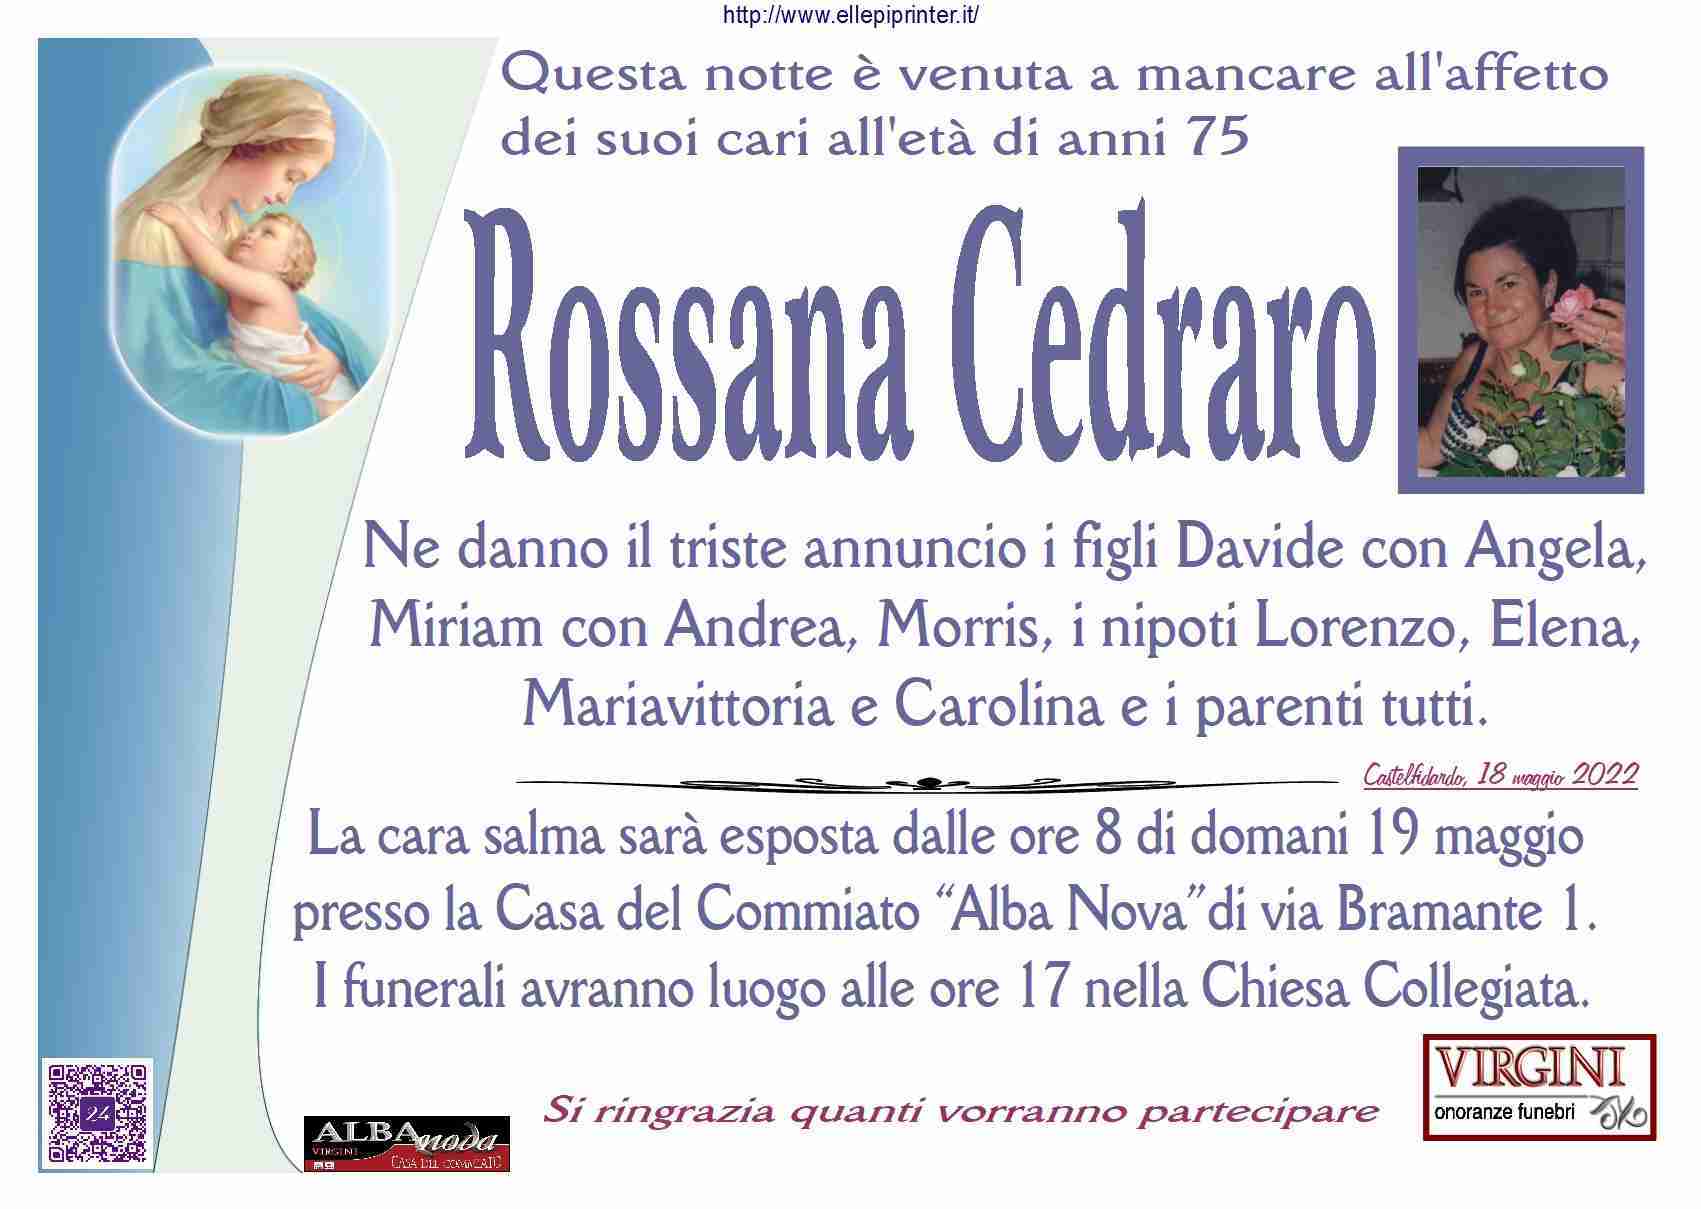 Rossana Cedraro